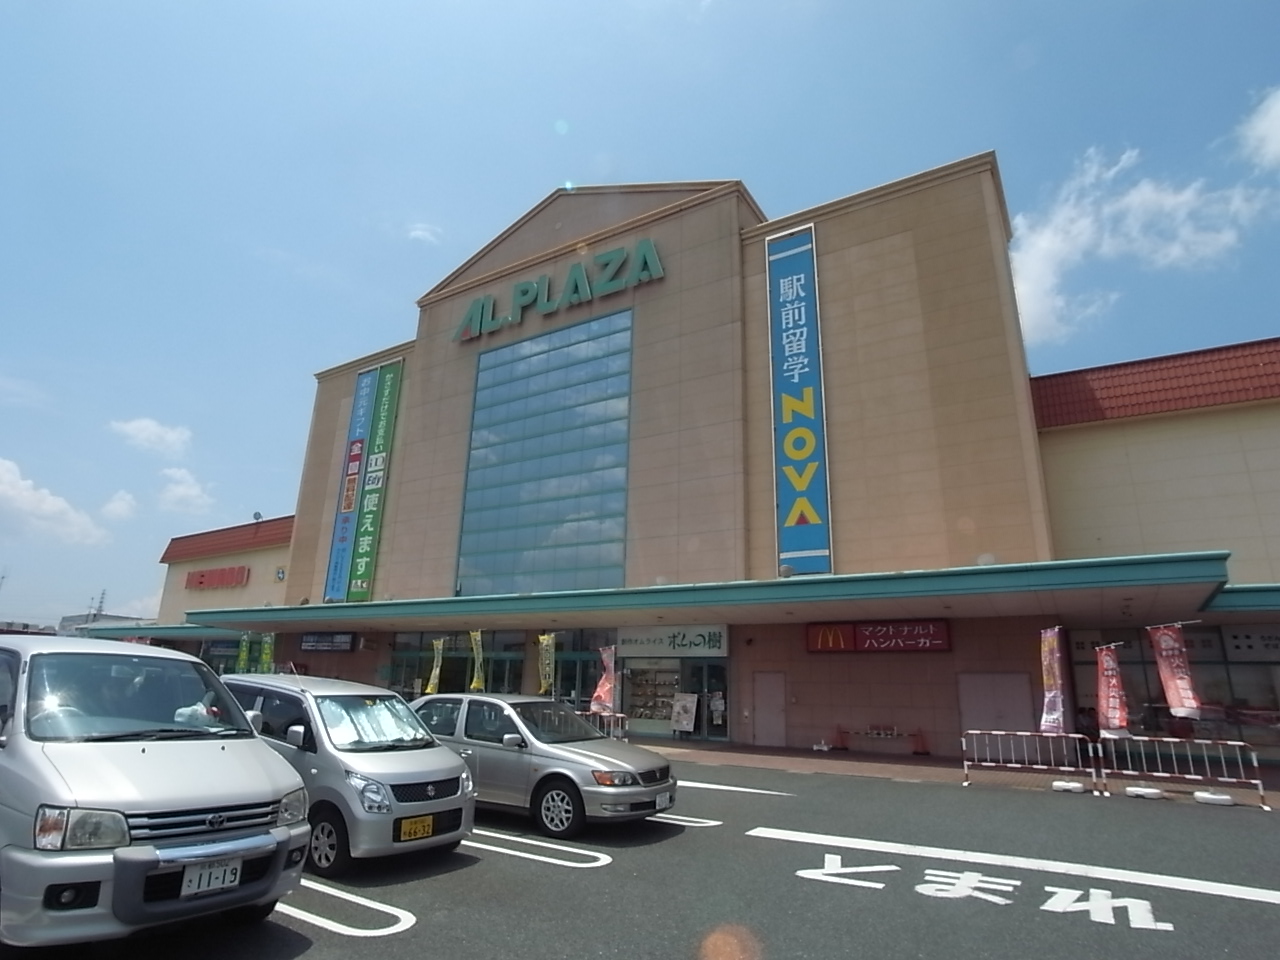 Supermarket. Al ・ Plaza Kizu to (super) 1129m